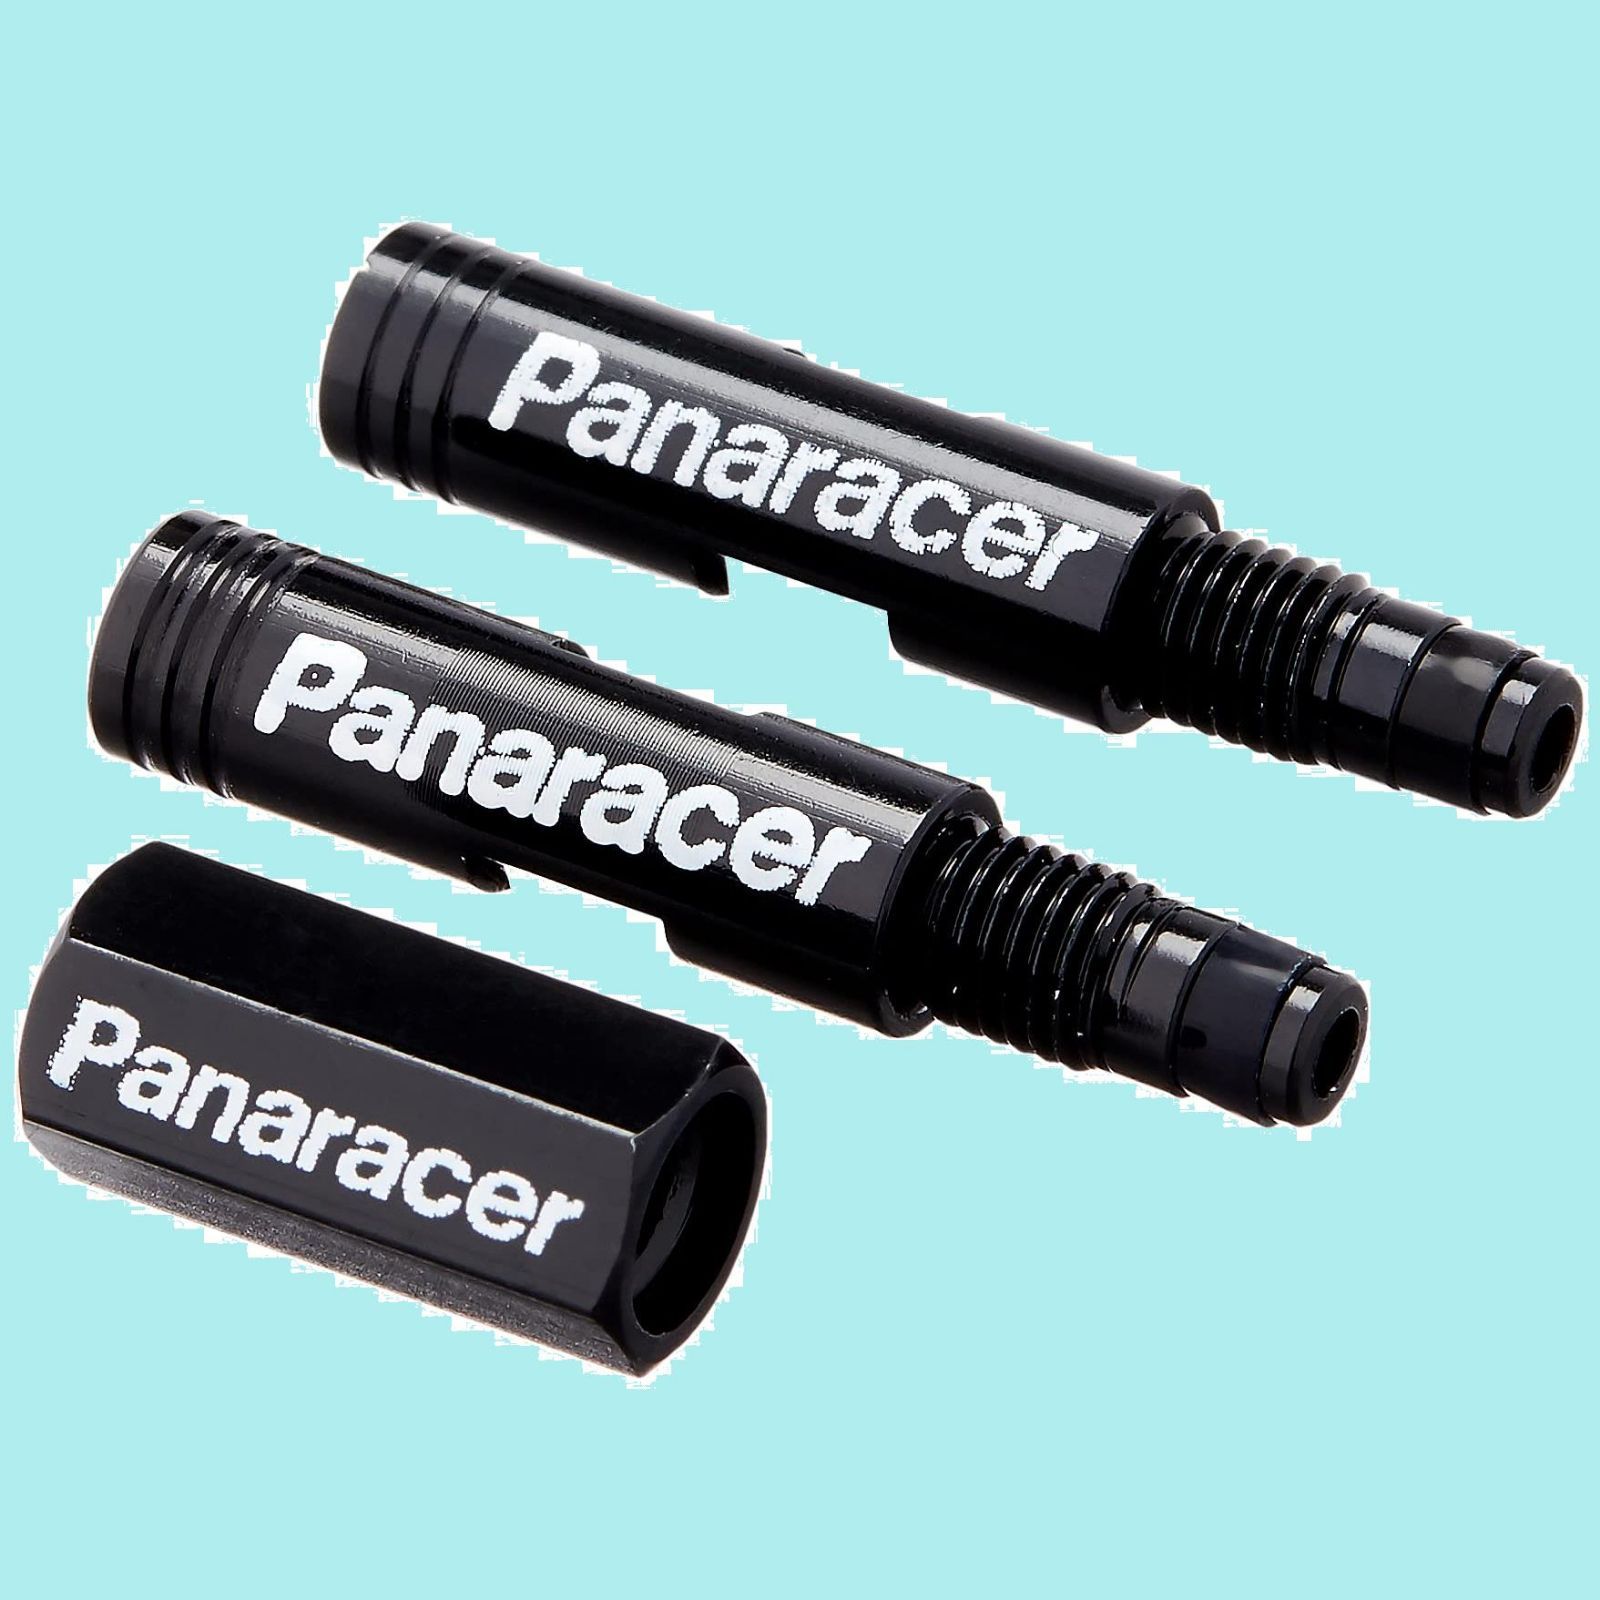 数量限定】パナレーサー(Panaracer) 用品 バルブエクステンダー(ブラック/ブルー) (20mm/50mm)2本セット [2ピース仏式バルブ用]  バルブコアツール付属 - メルカリ